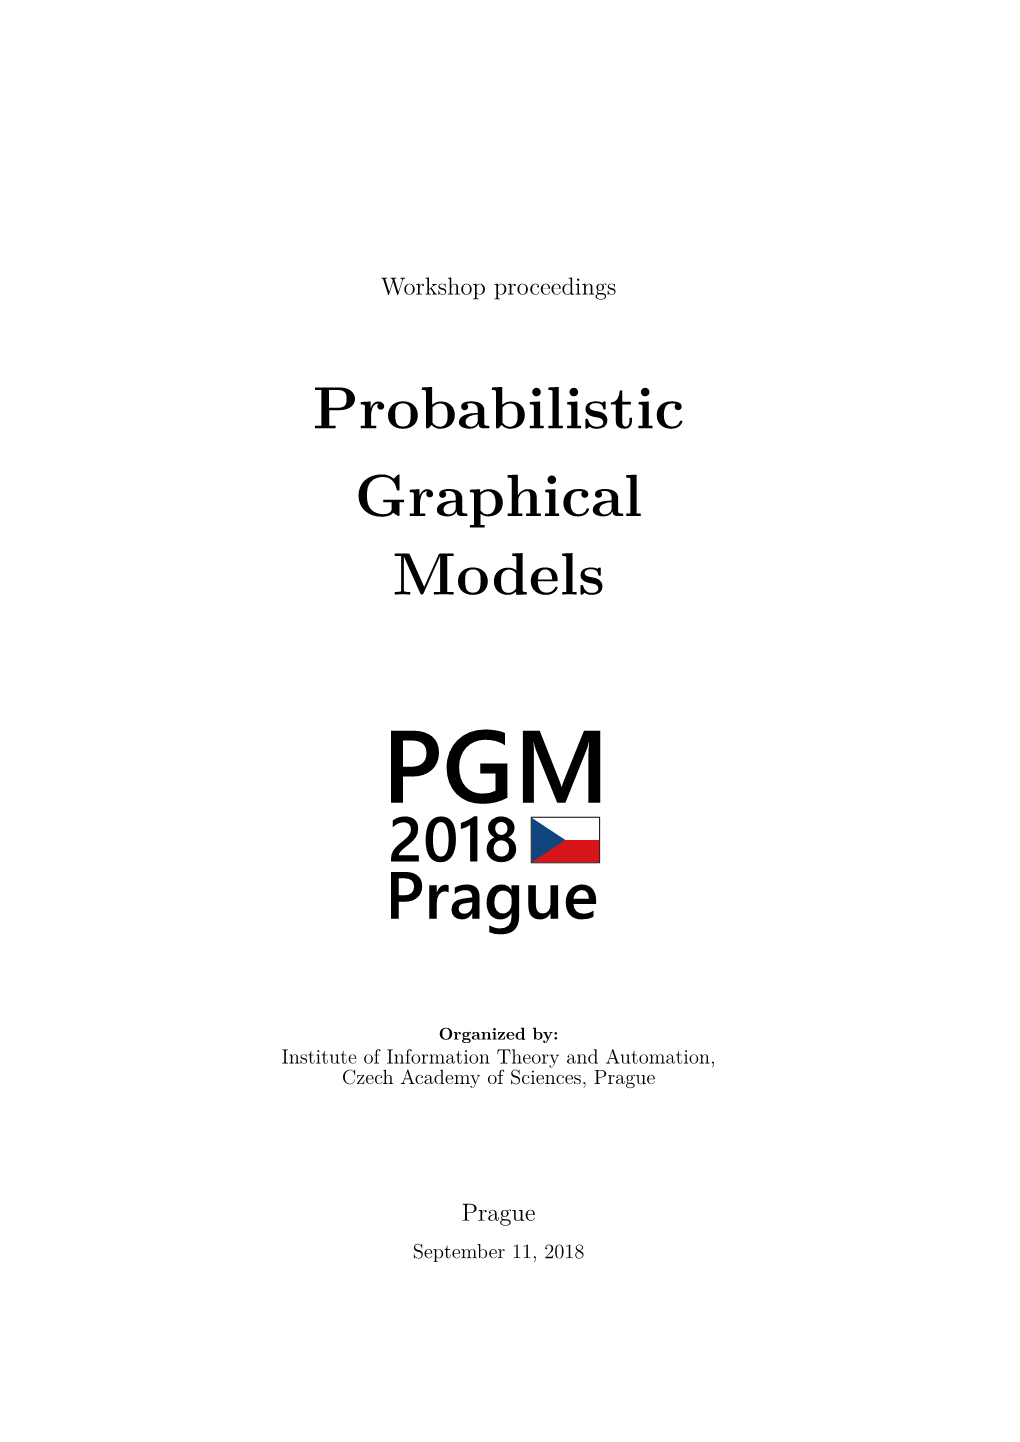 PGM 2018 Workshop Proceedings